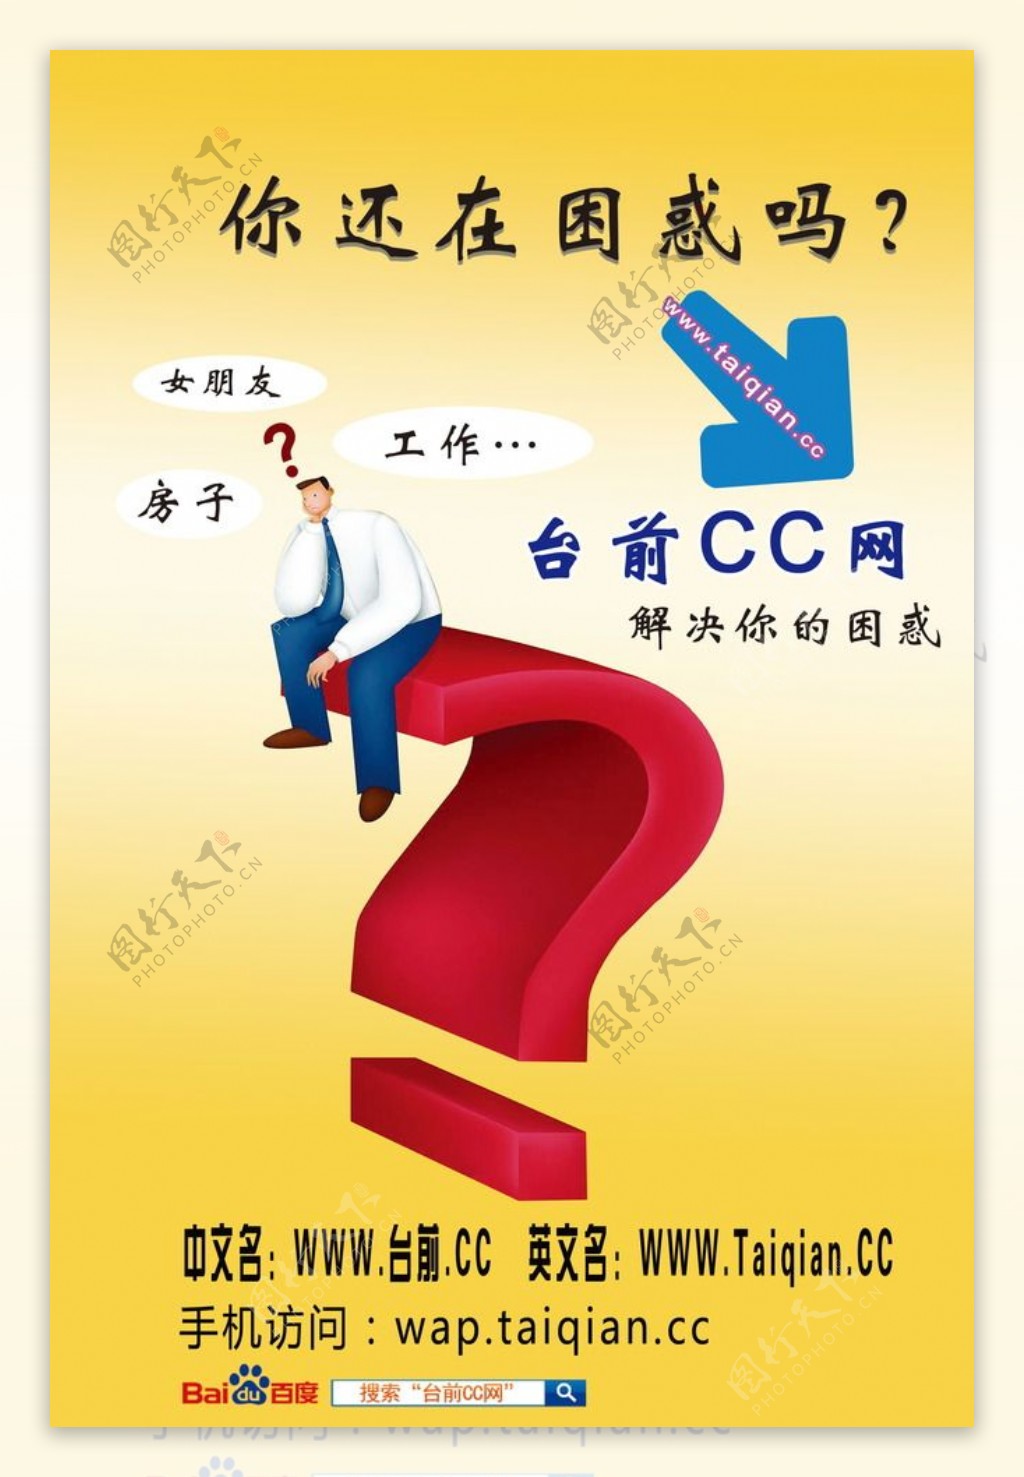 地方门户网站宣传海报彩页